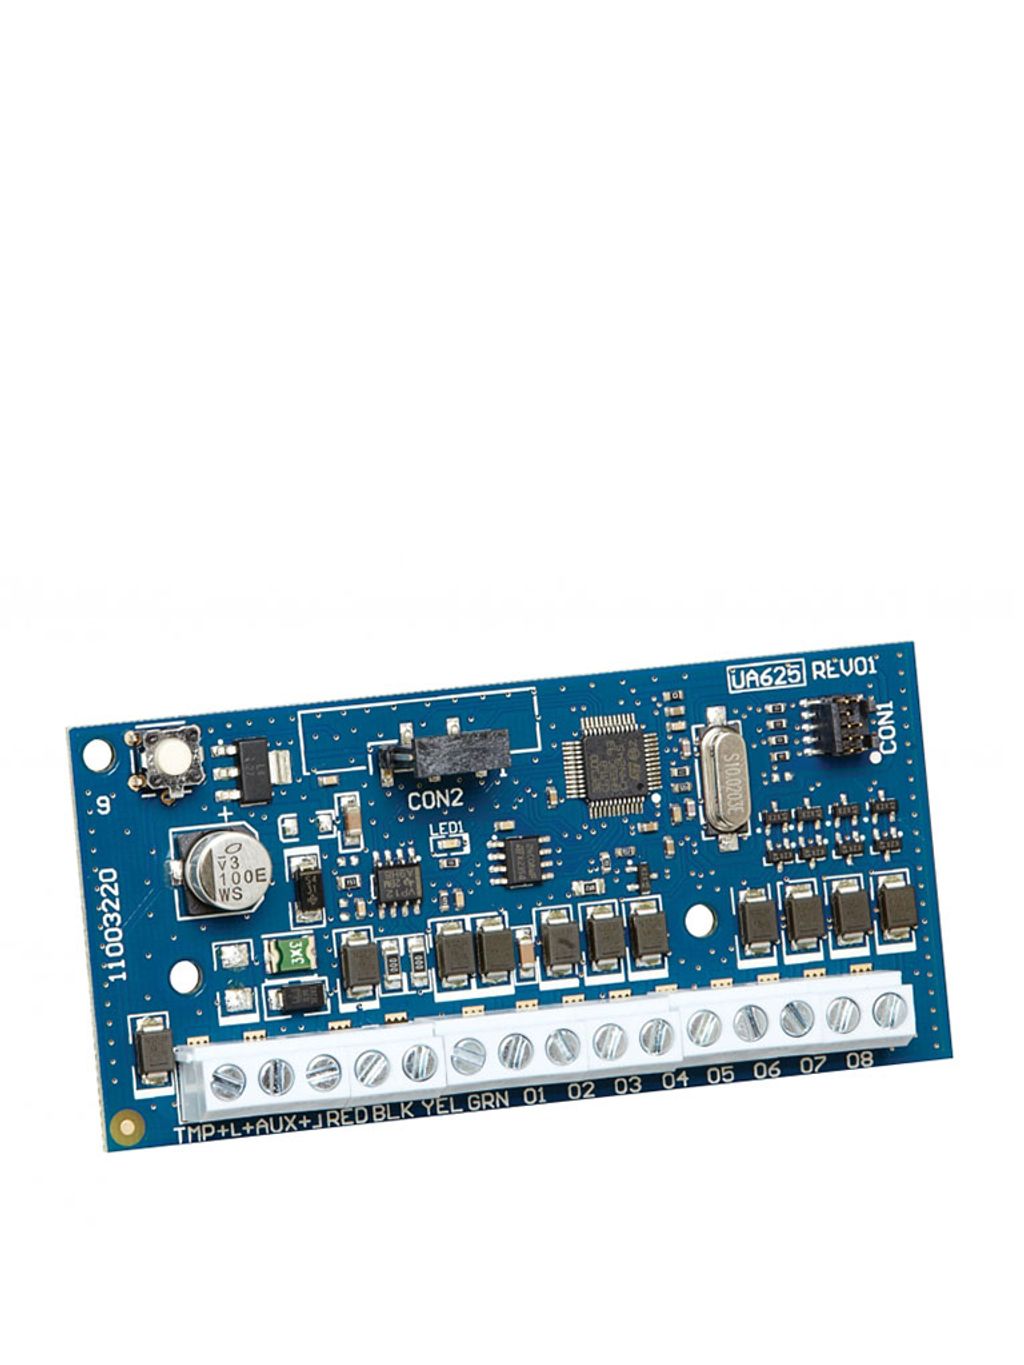 DSC HSM2208 Módulo Expansor de 8 Salidas Programables de baja corriente compatible con panel NEO